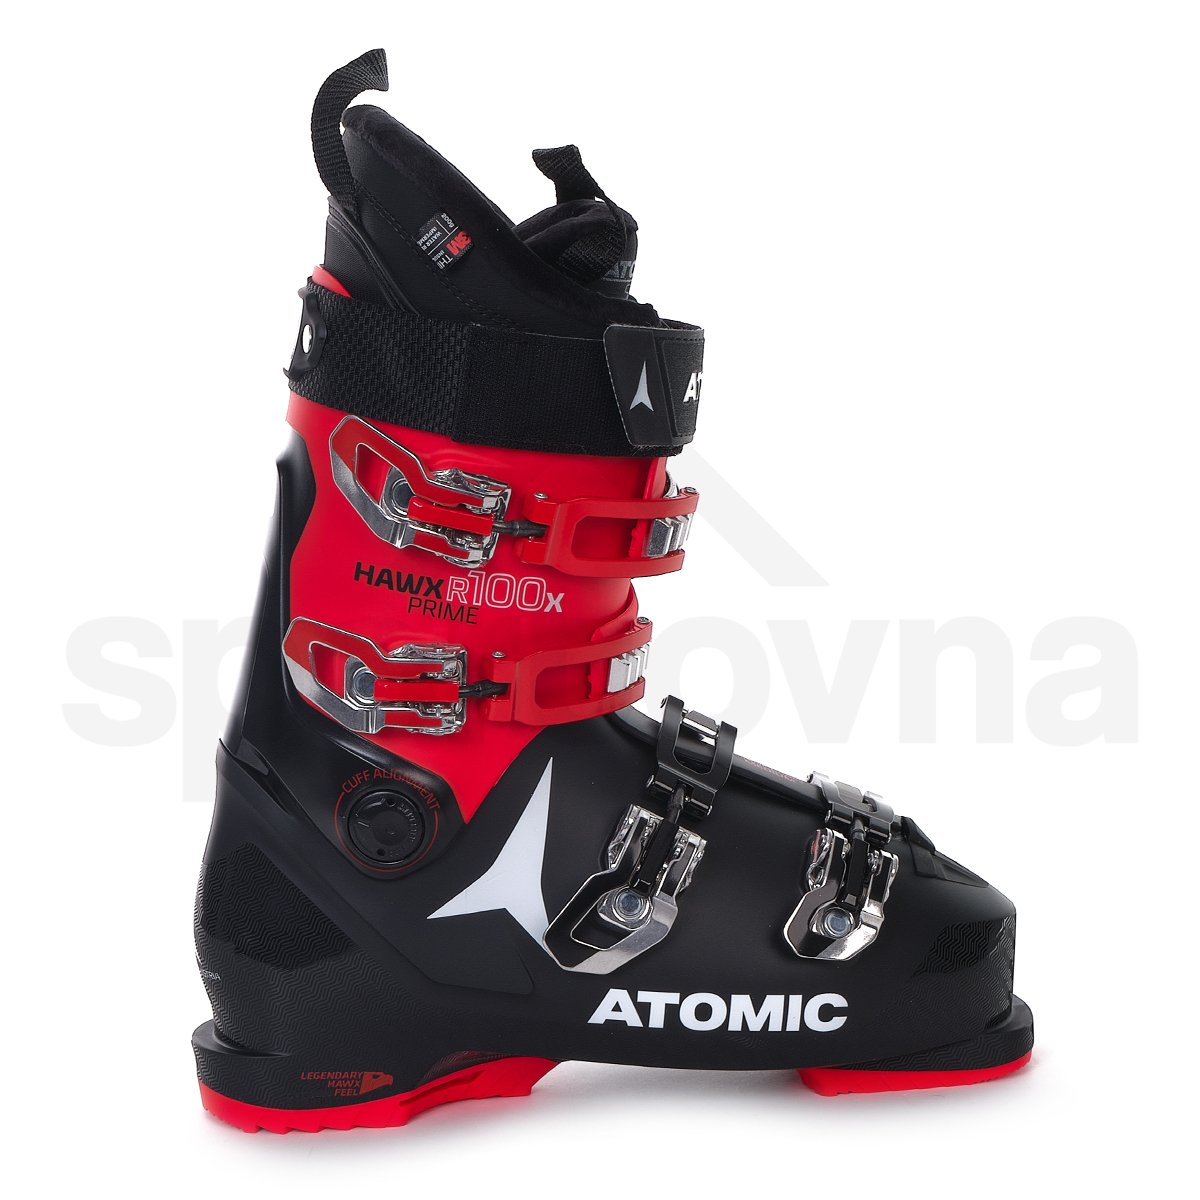 Lyžařské boty Atomic Hawx Prime R100x - černá/červená